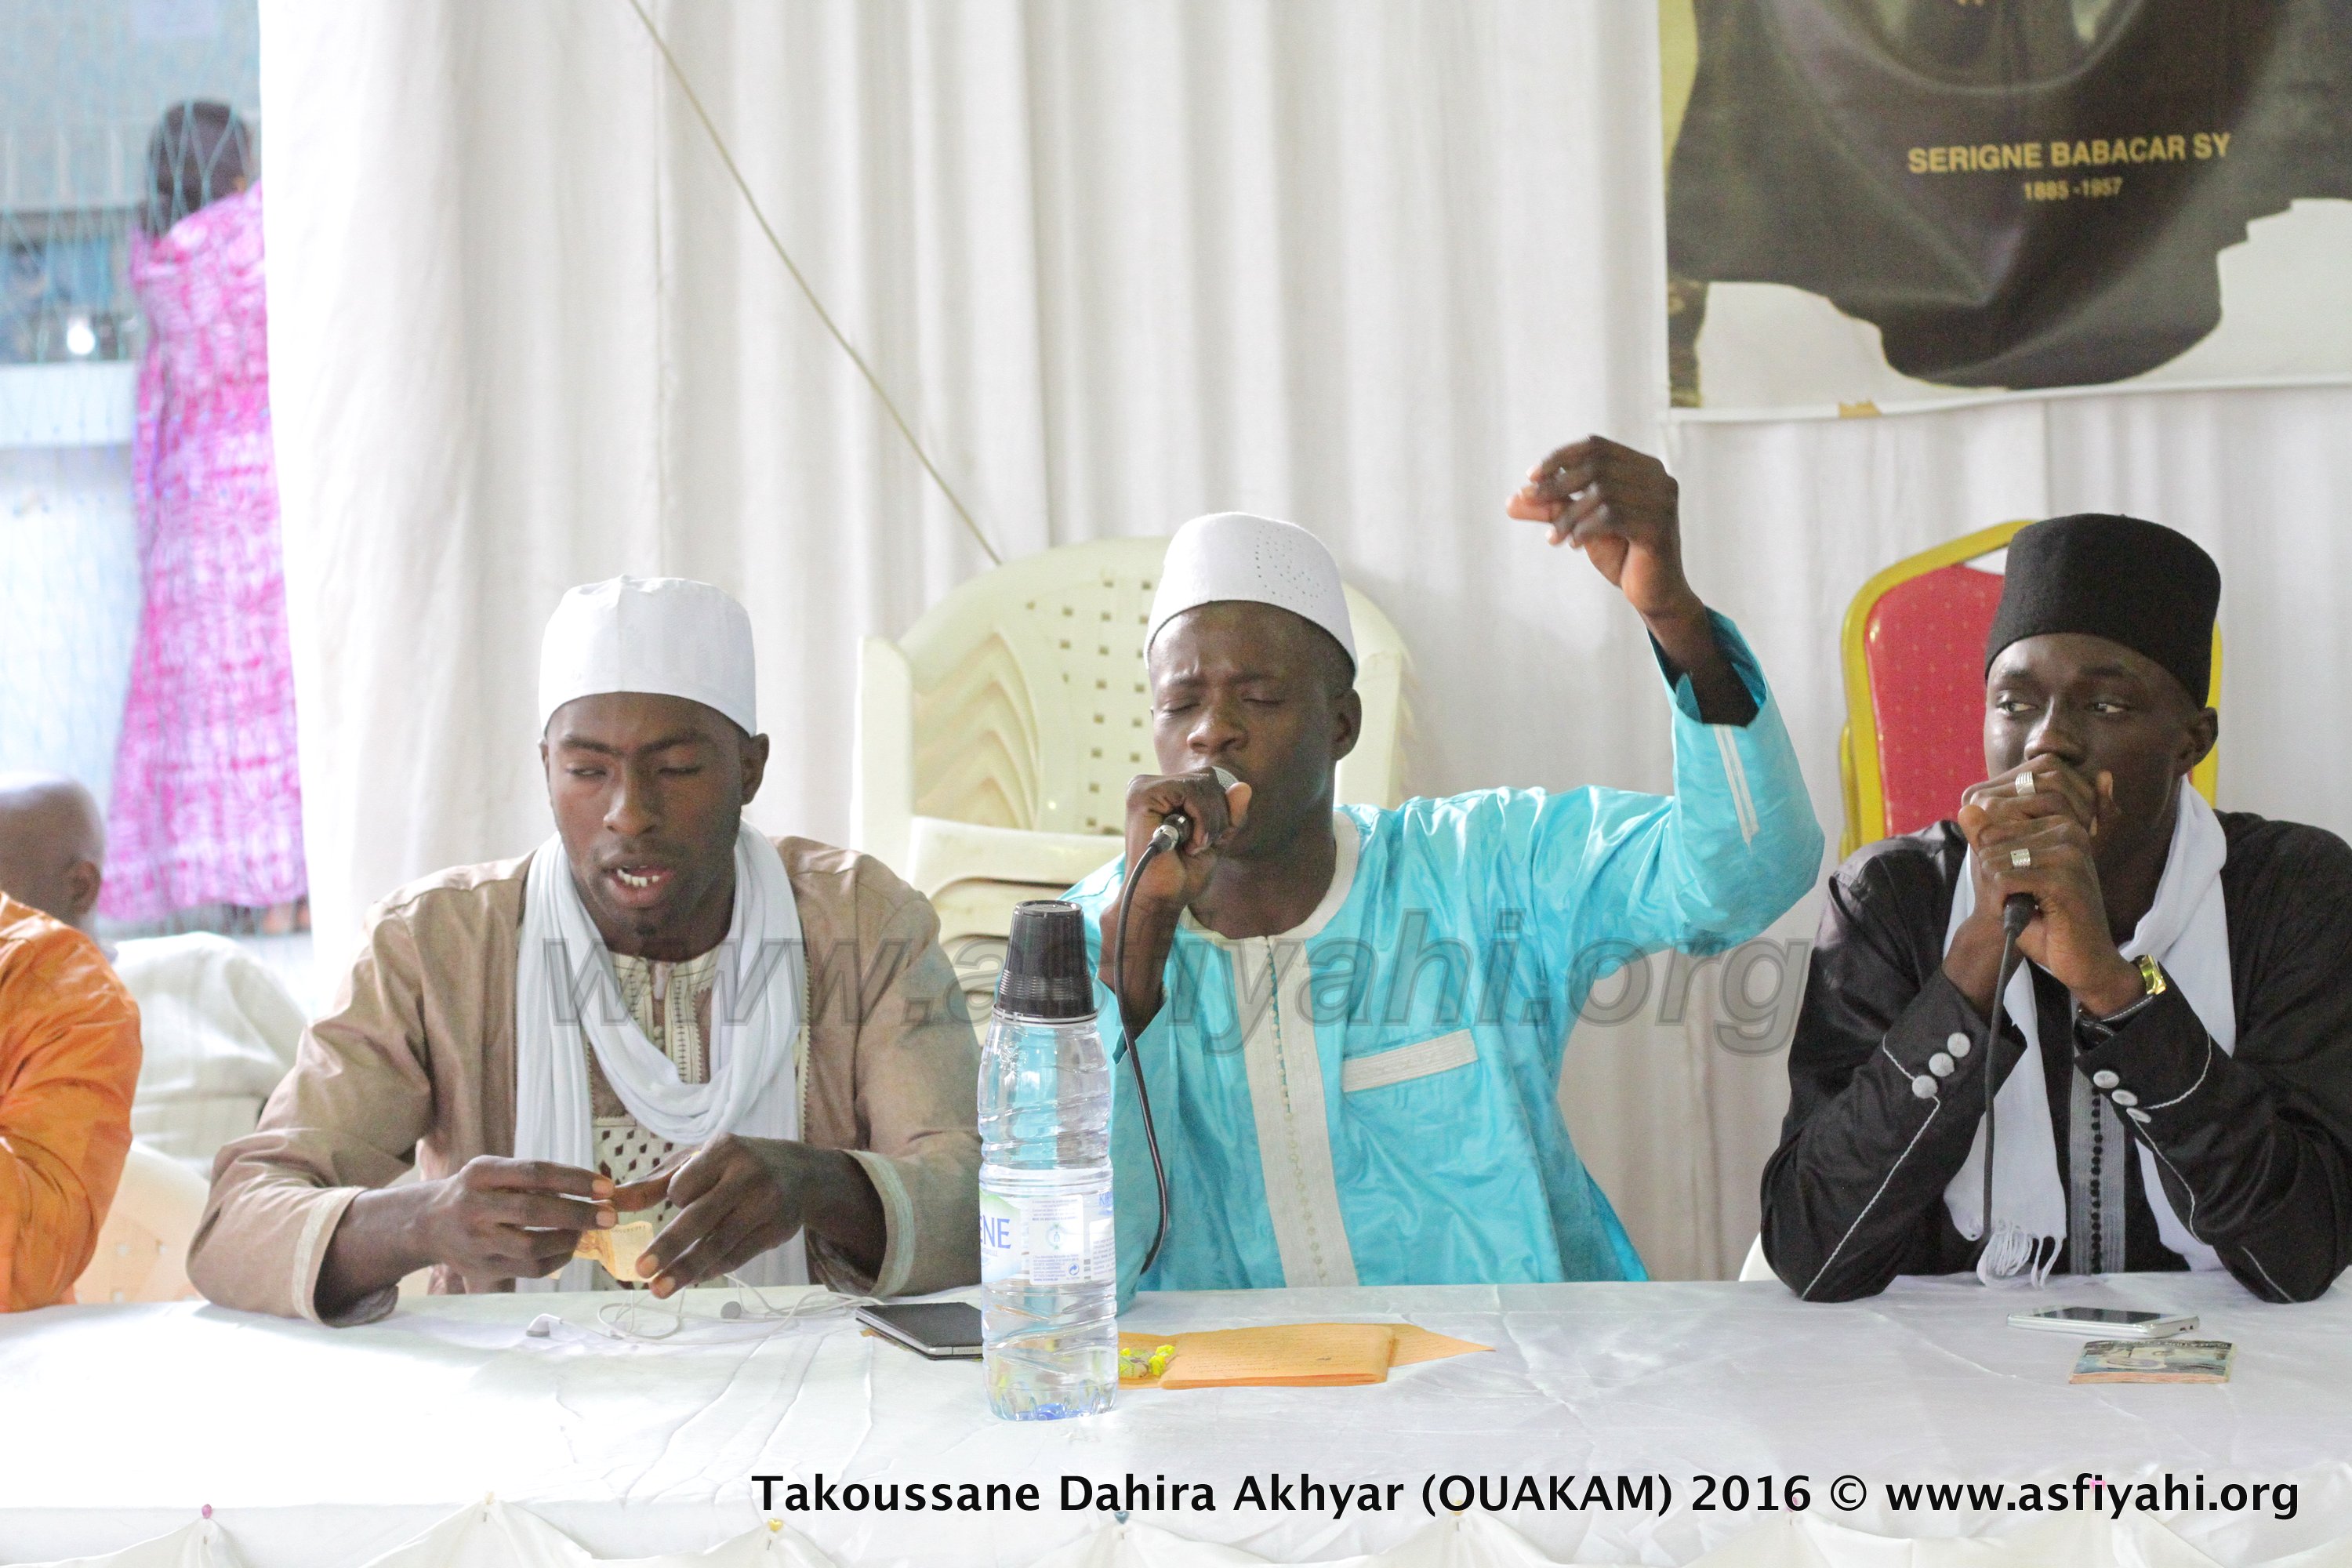 PHOTOS - OUAKAM - Les Images du Takoussane de la Dahira Akhyar, Samedi 6 Février 2016 à la Place Bayé, sous la présidence de Serigne Moustapha Sy Abdou